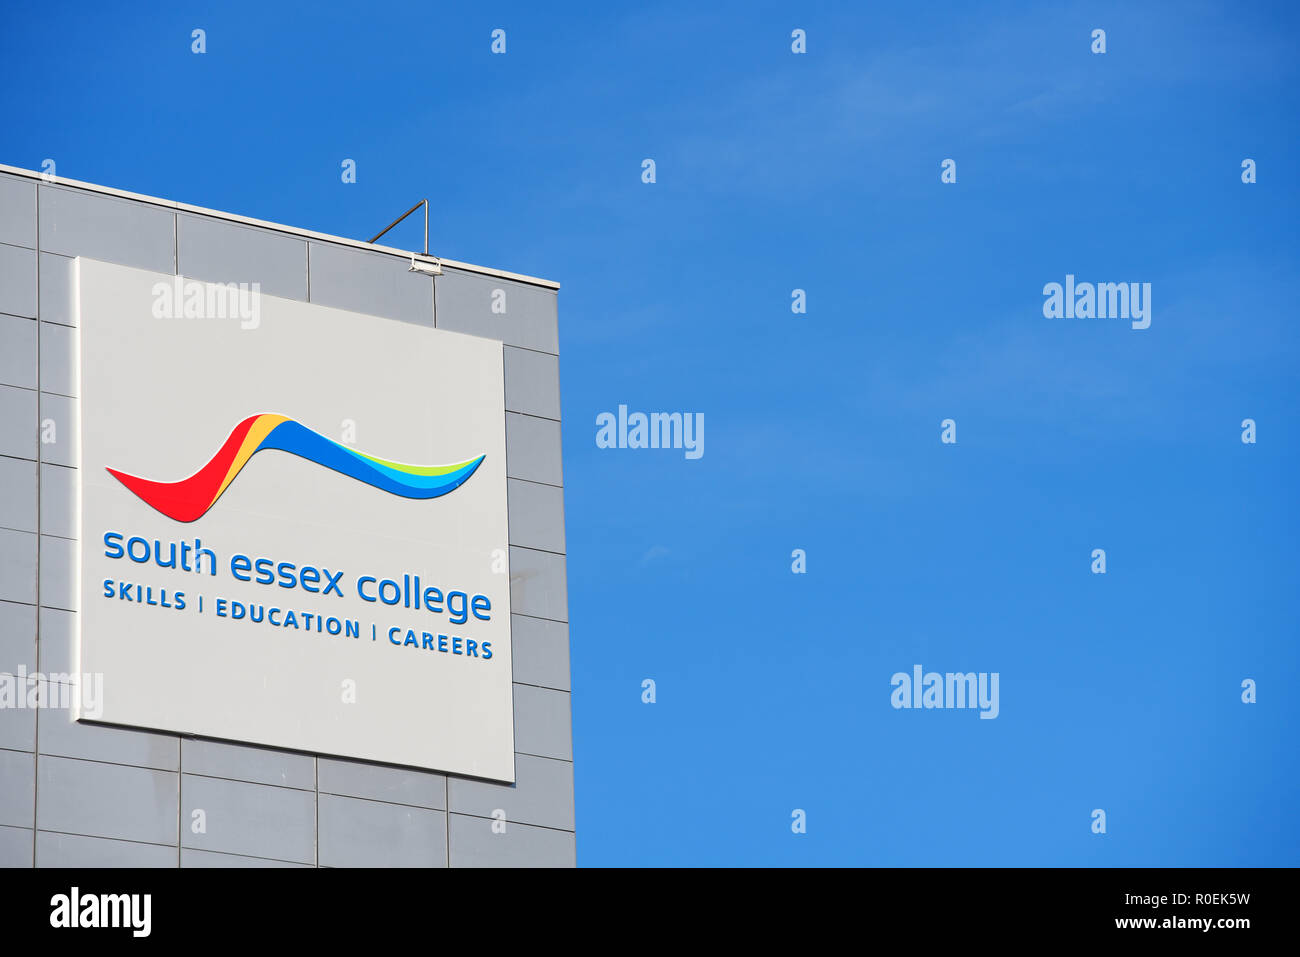 South Essex College, competenze, l'istruzione, la carriera di segno. Southend on Sea, Essex, Regno Unito. Edificio. Centro di educazione. Moderno. Blue sky con spazio per la copia Foto Stock